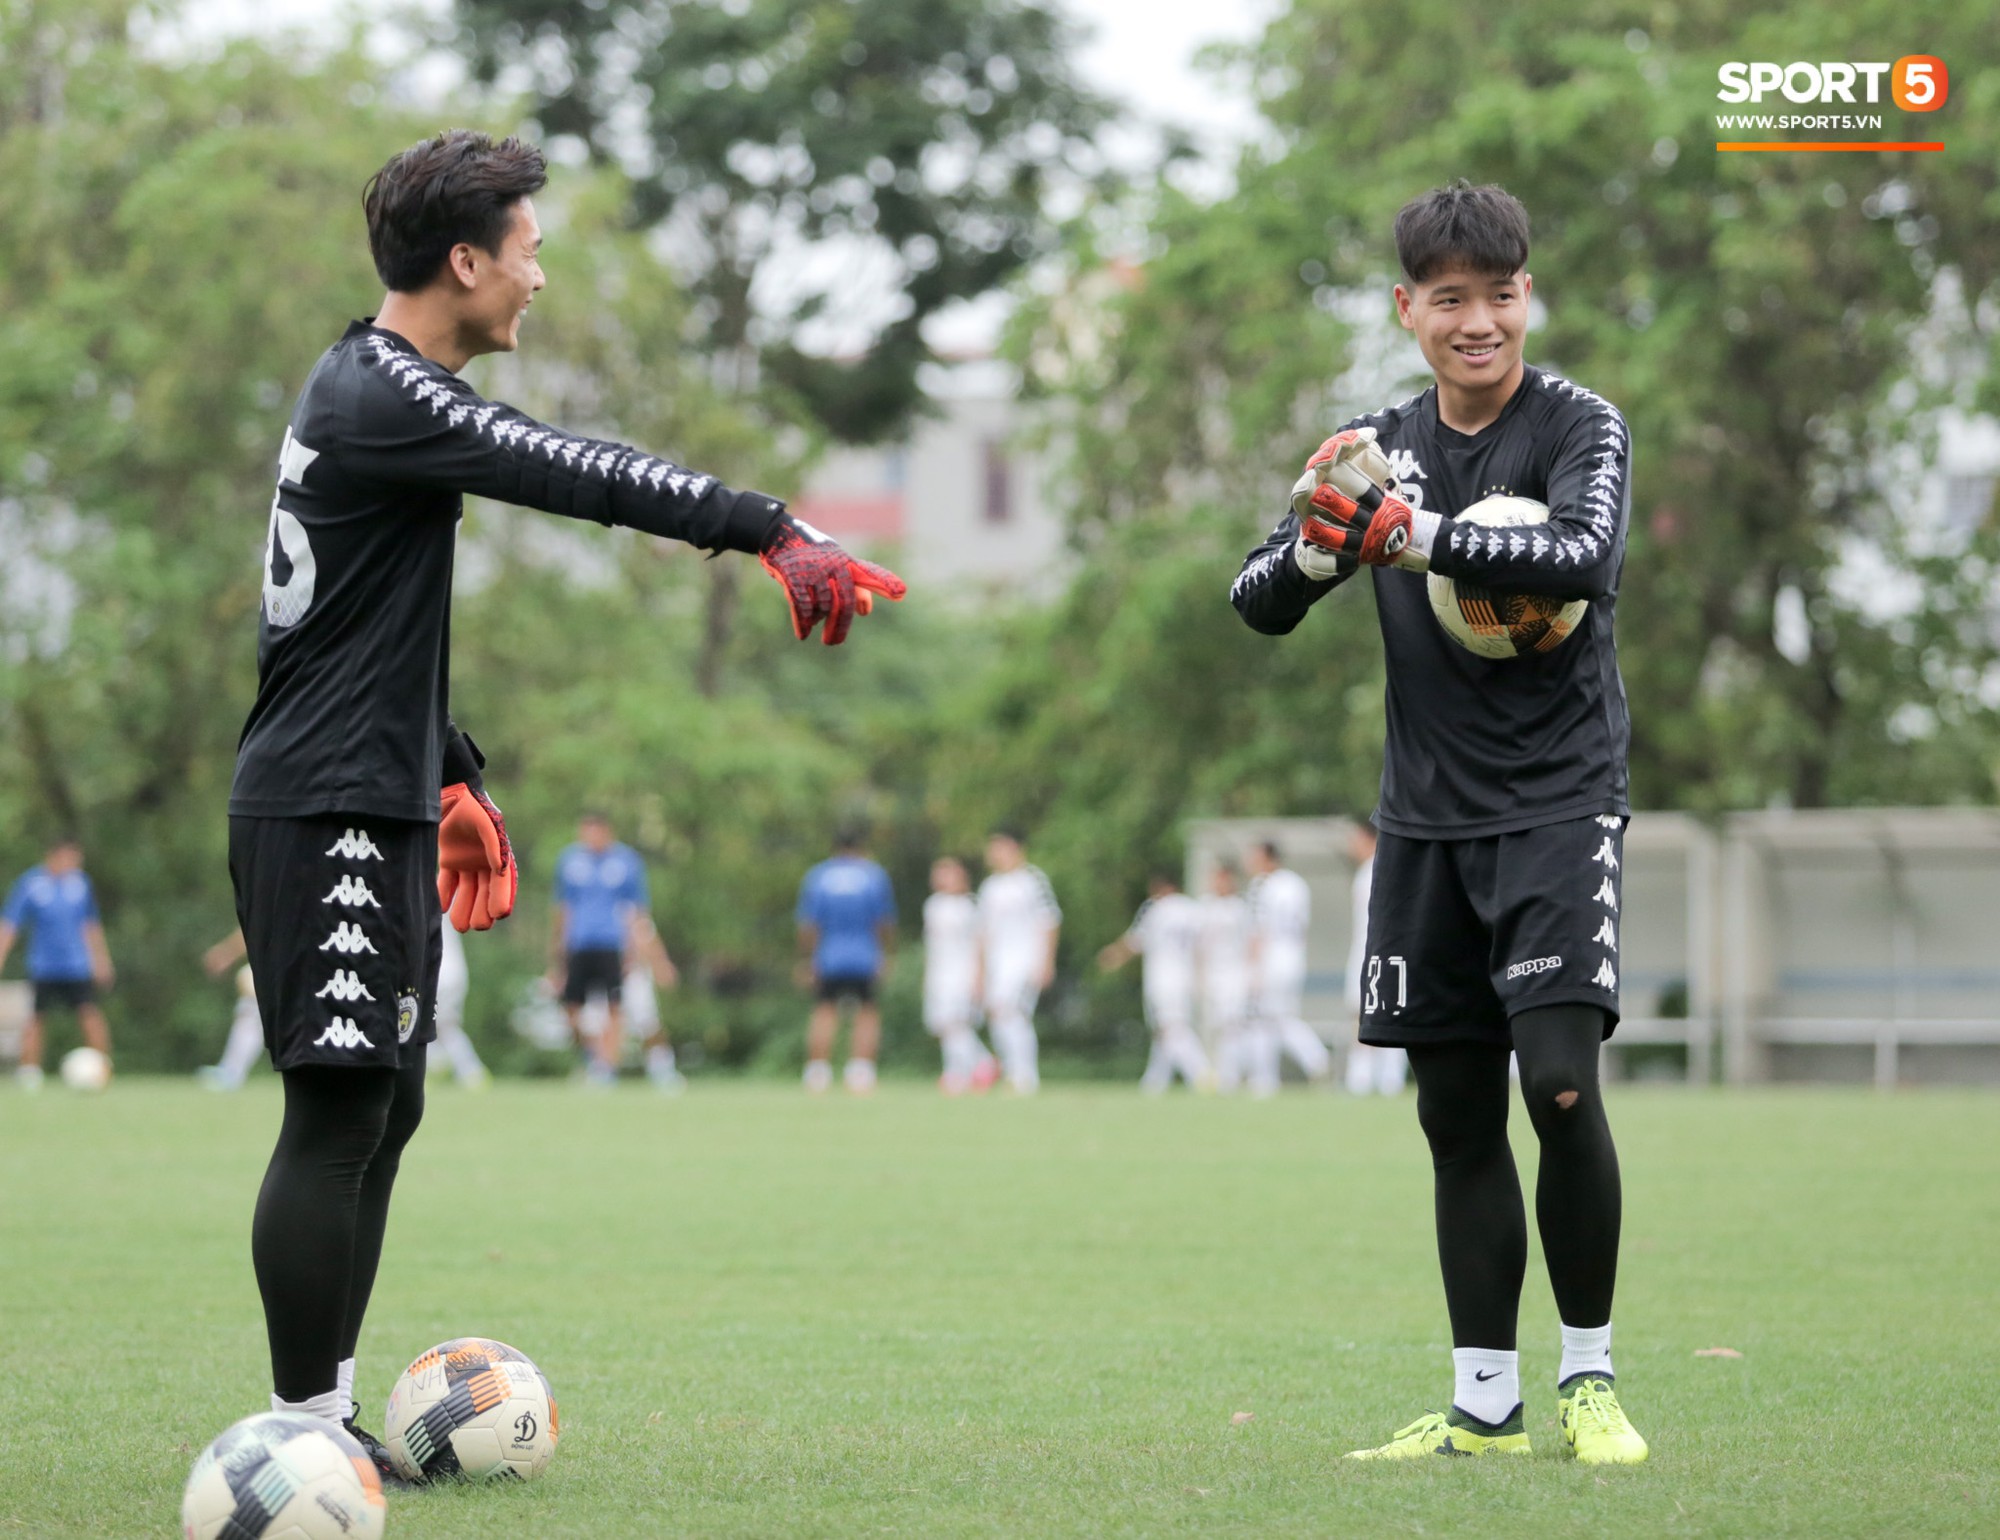 Quang Hải bấm bóng, ghi bàn đẳng cấp vào lưới Tiến Dũng trong buổi tập của Hà Nội FC - Ảnh 8.